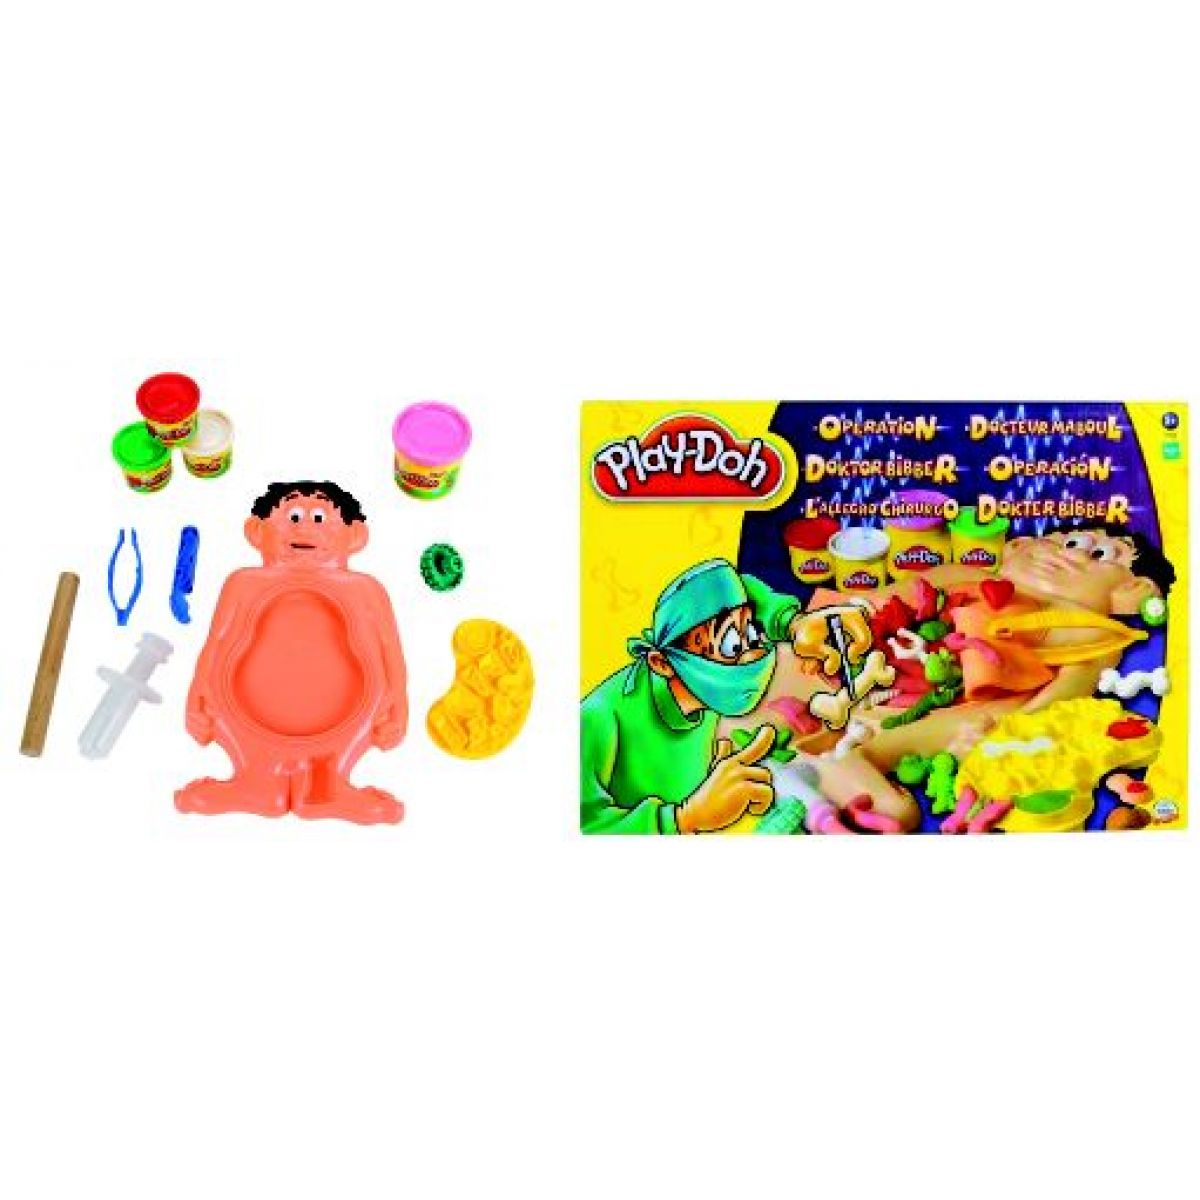 Play-Doh Operace Hasbro